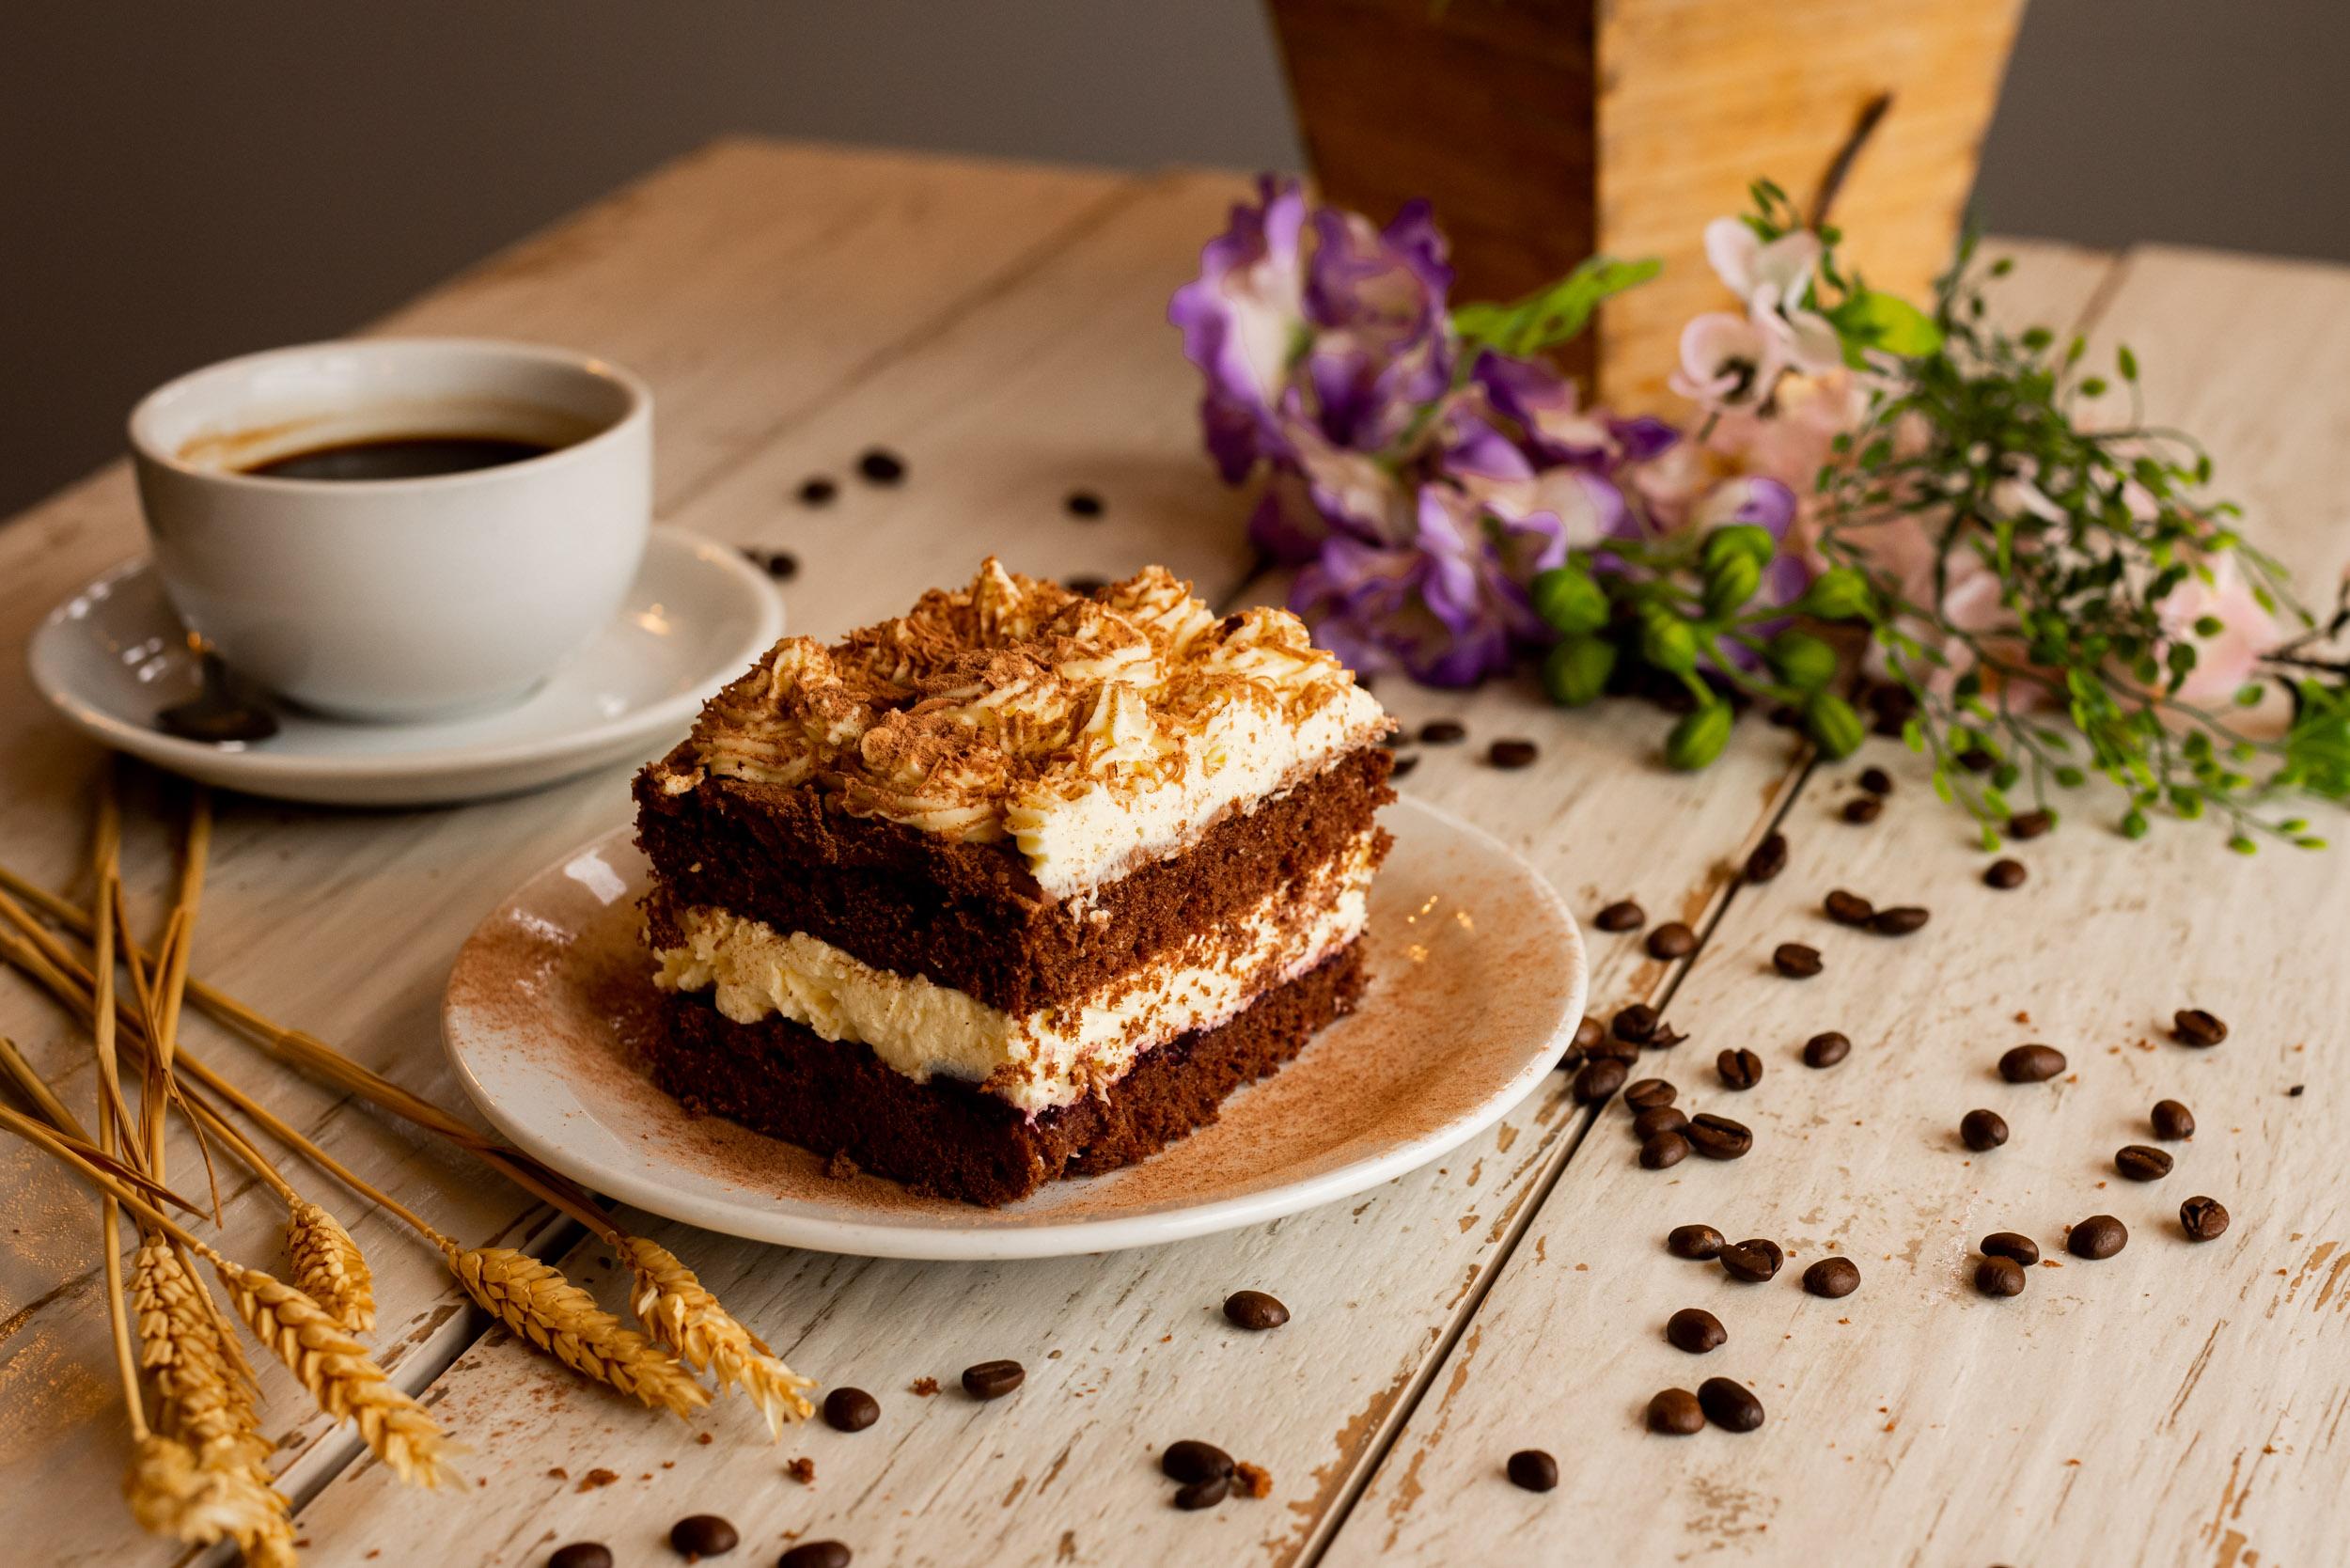 Chocolate Cake with coffee